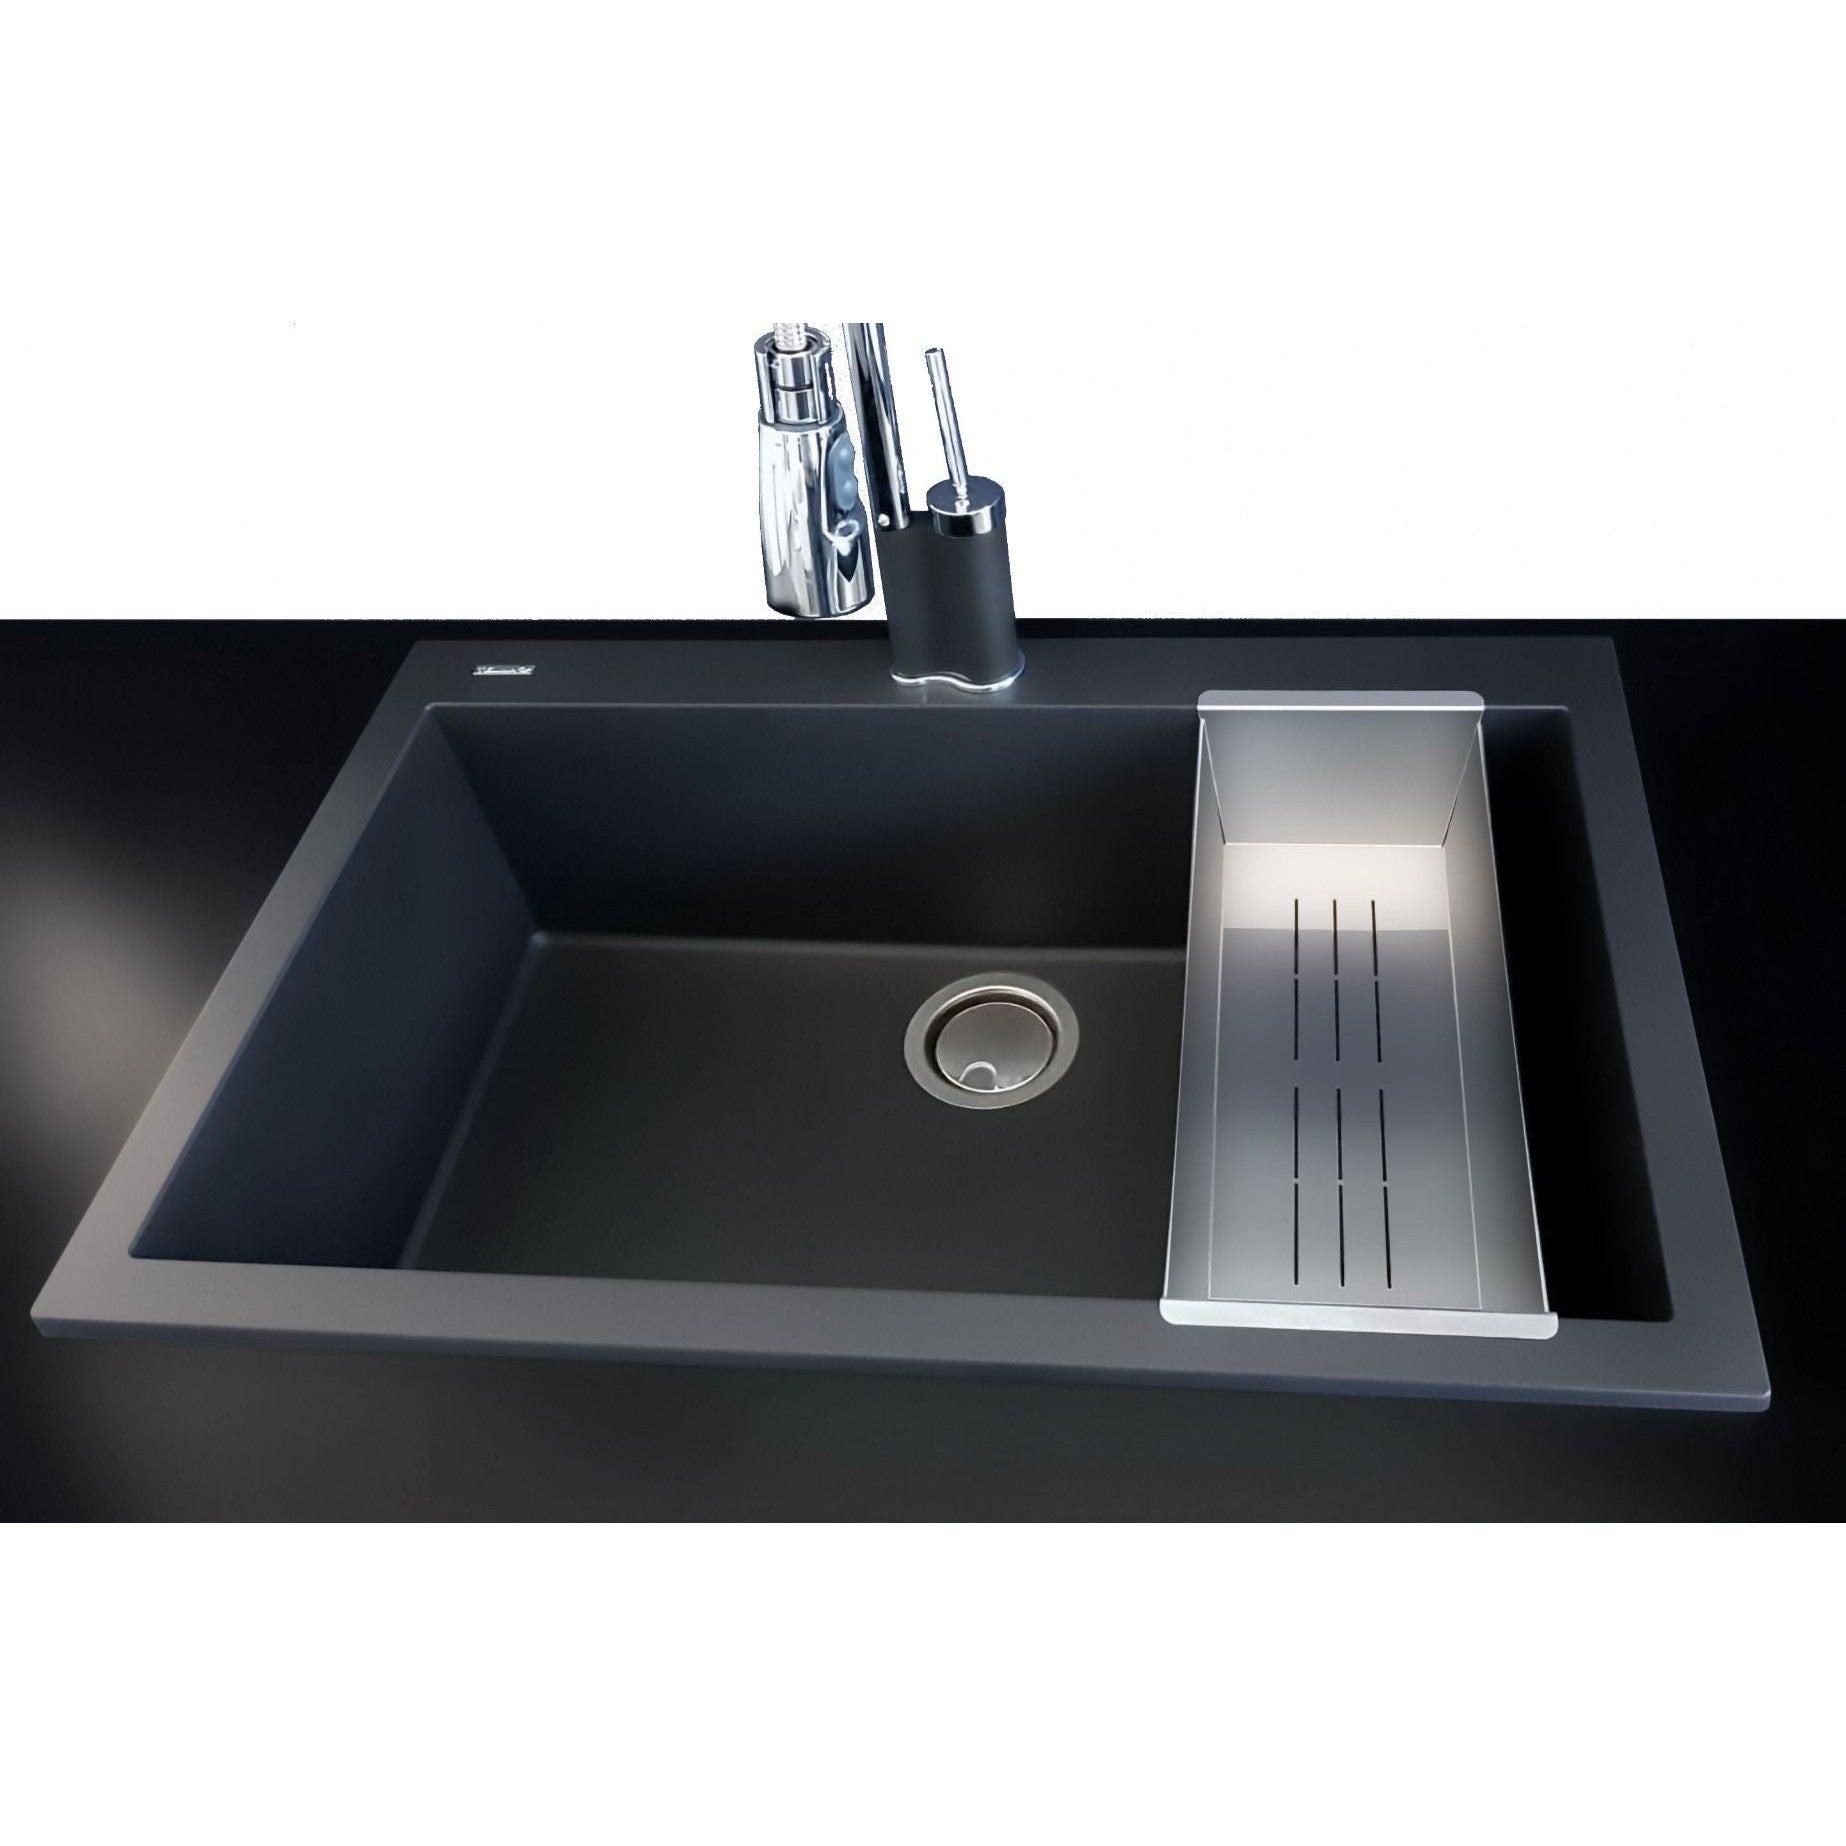 ALFI Brand AB85SSC Stainless Steel Colander Insert for Granite Sinks